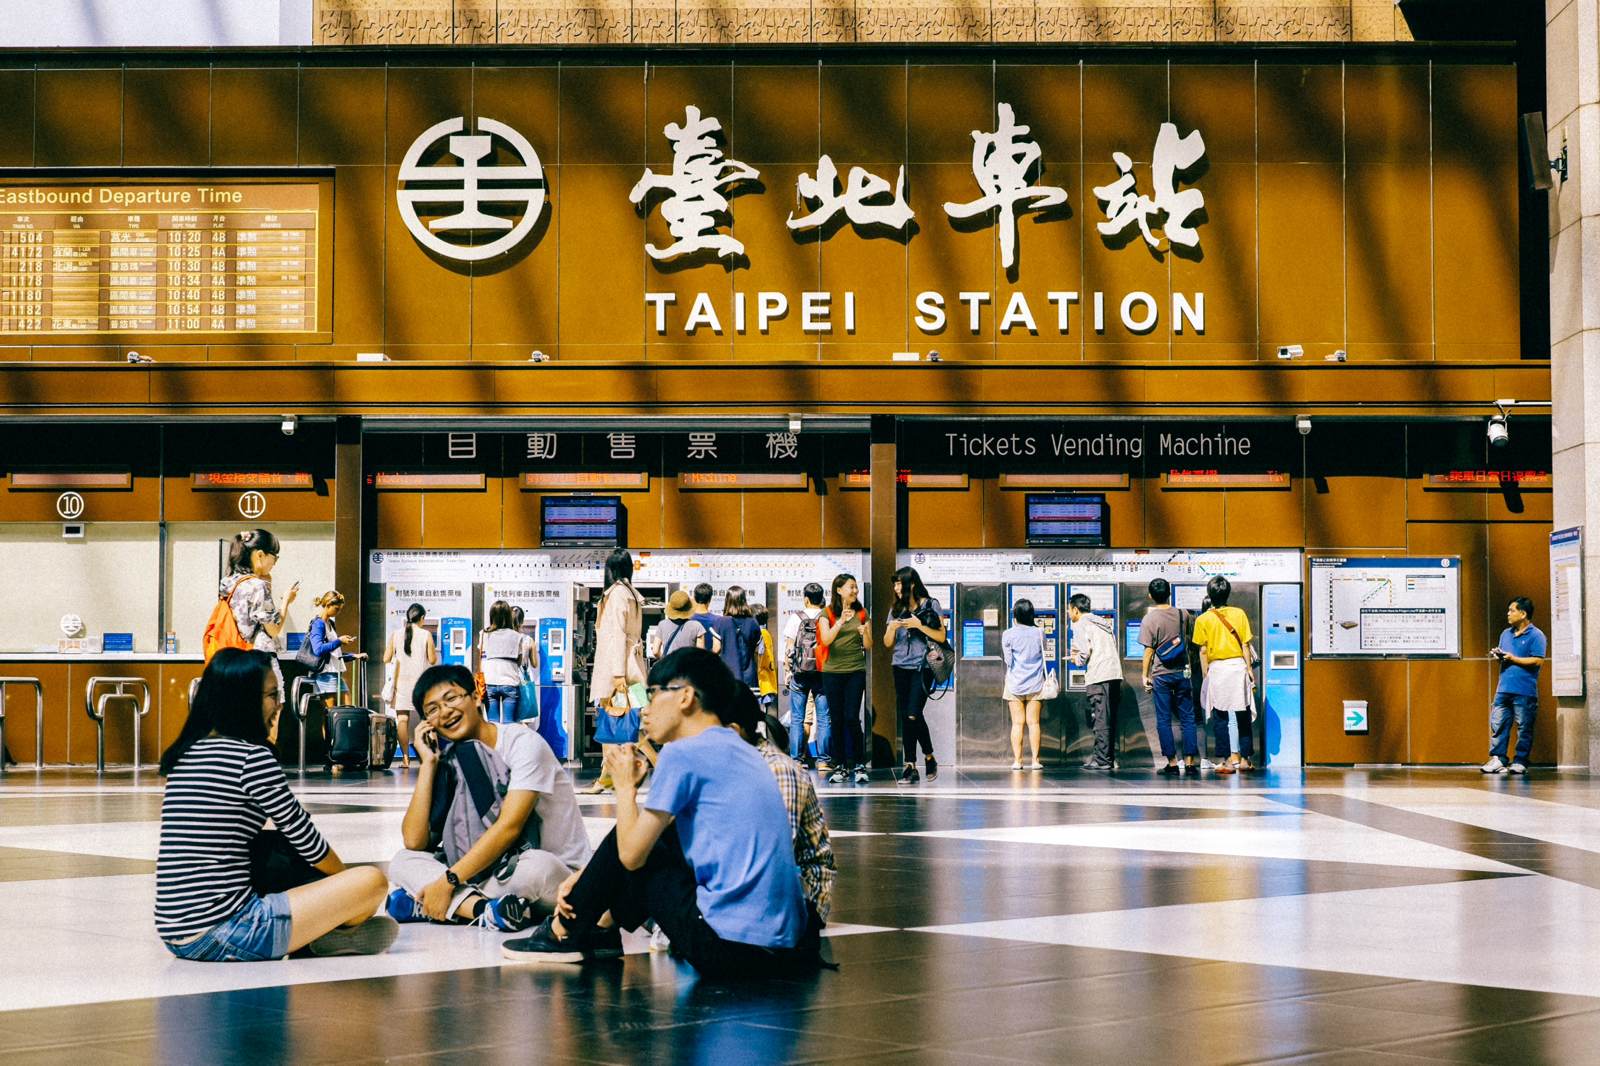 台北车站真的是名副其实的交通枢纽，捷运、台铁、高铁都在一起，完全可以做